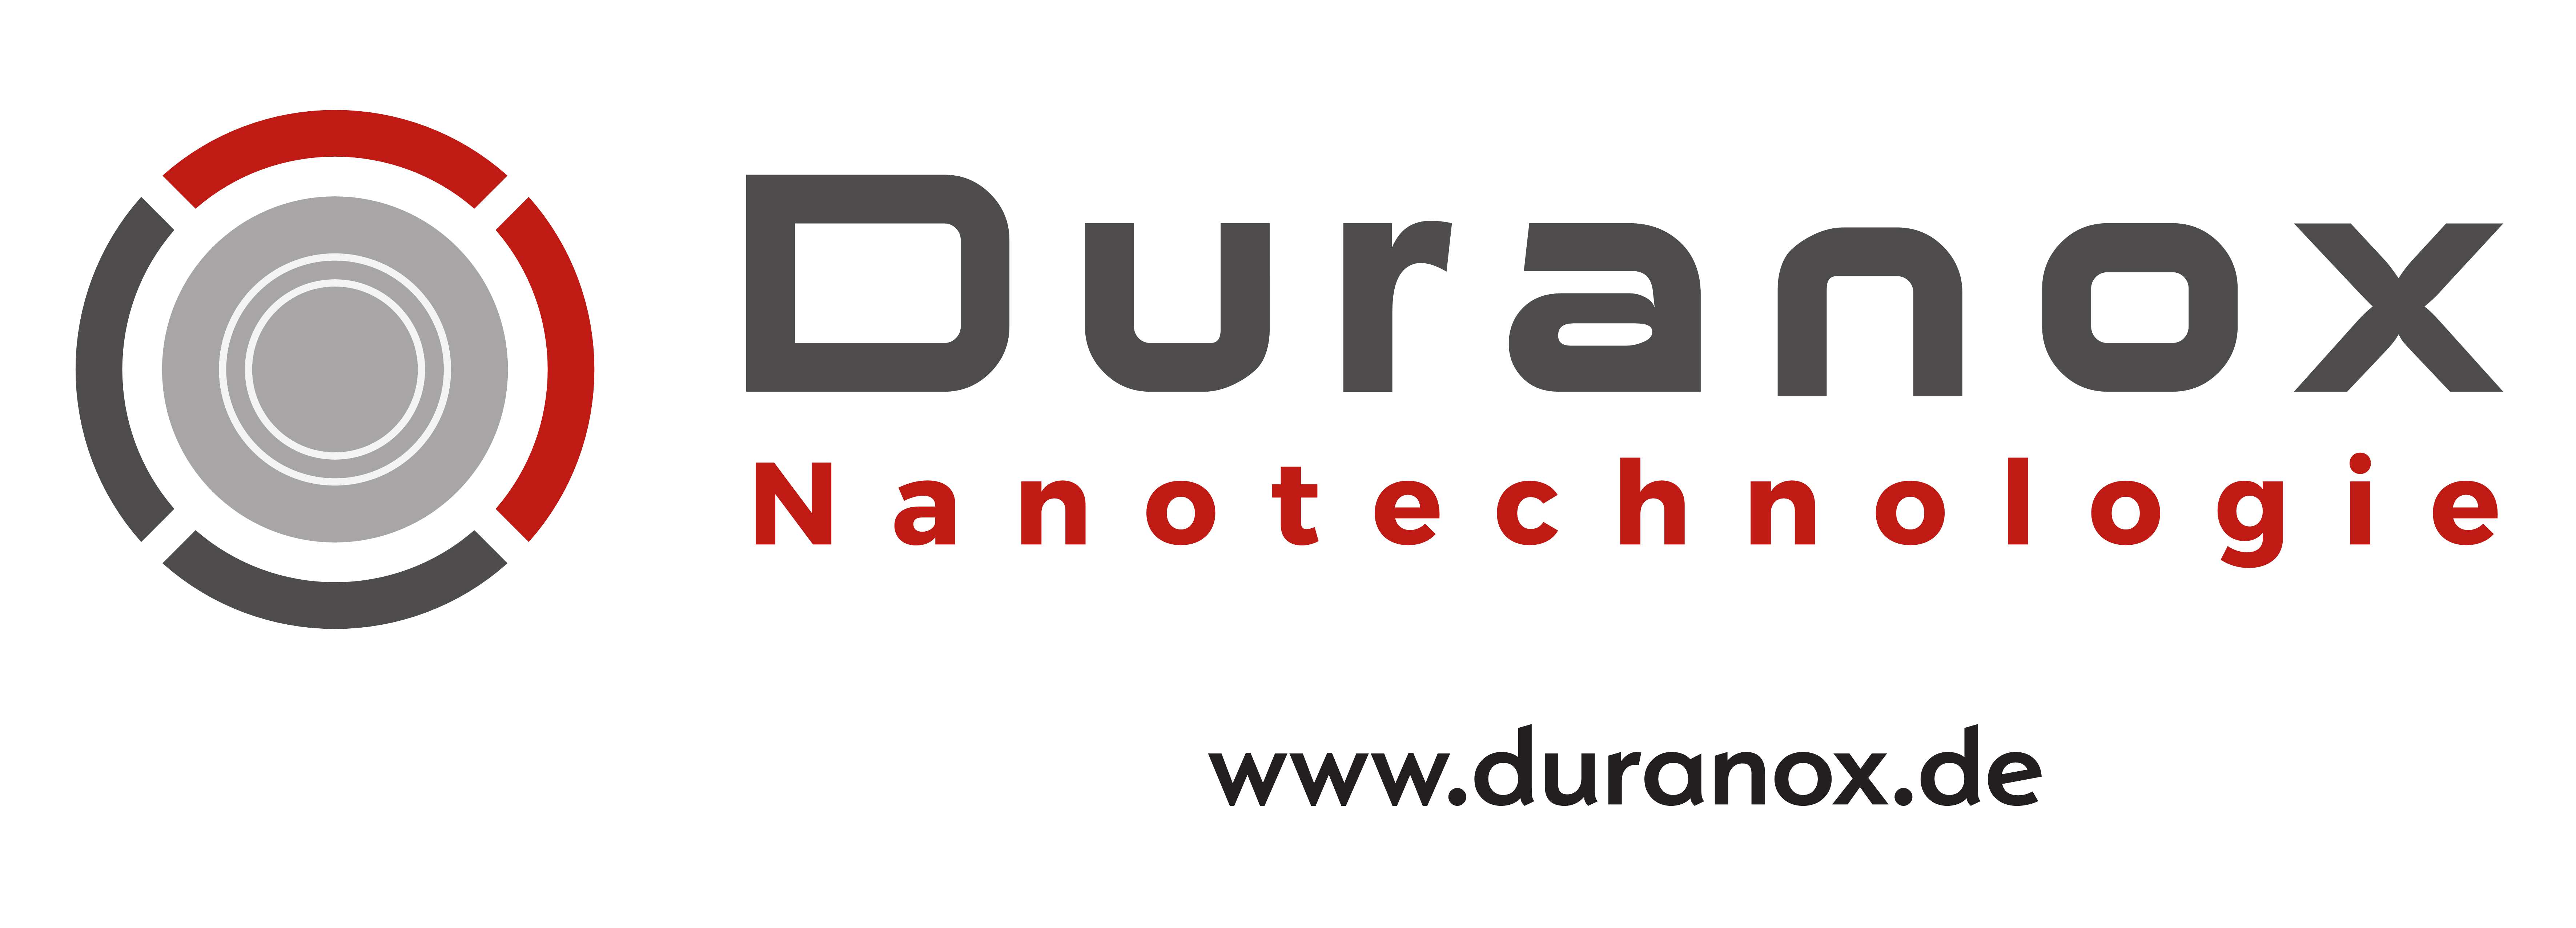 Duranox-p1.jpg